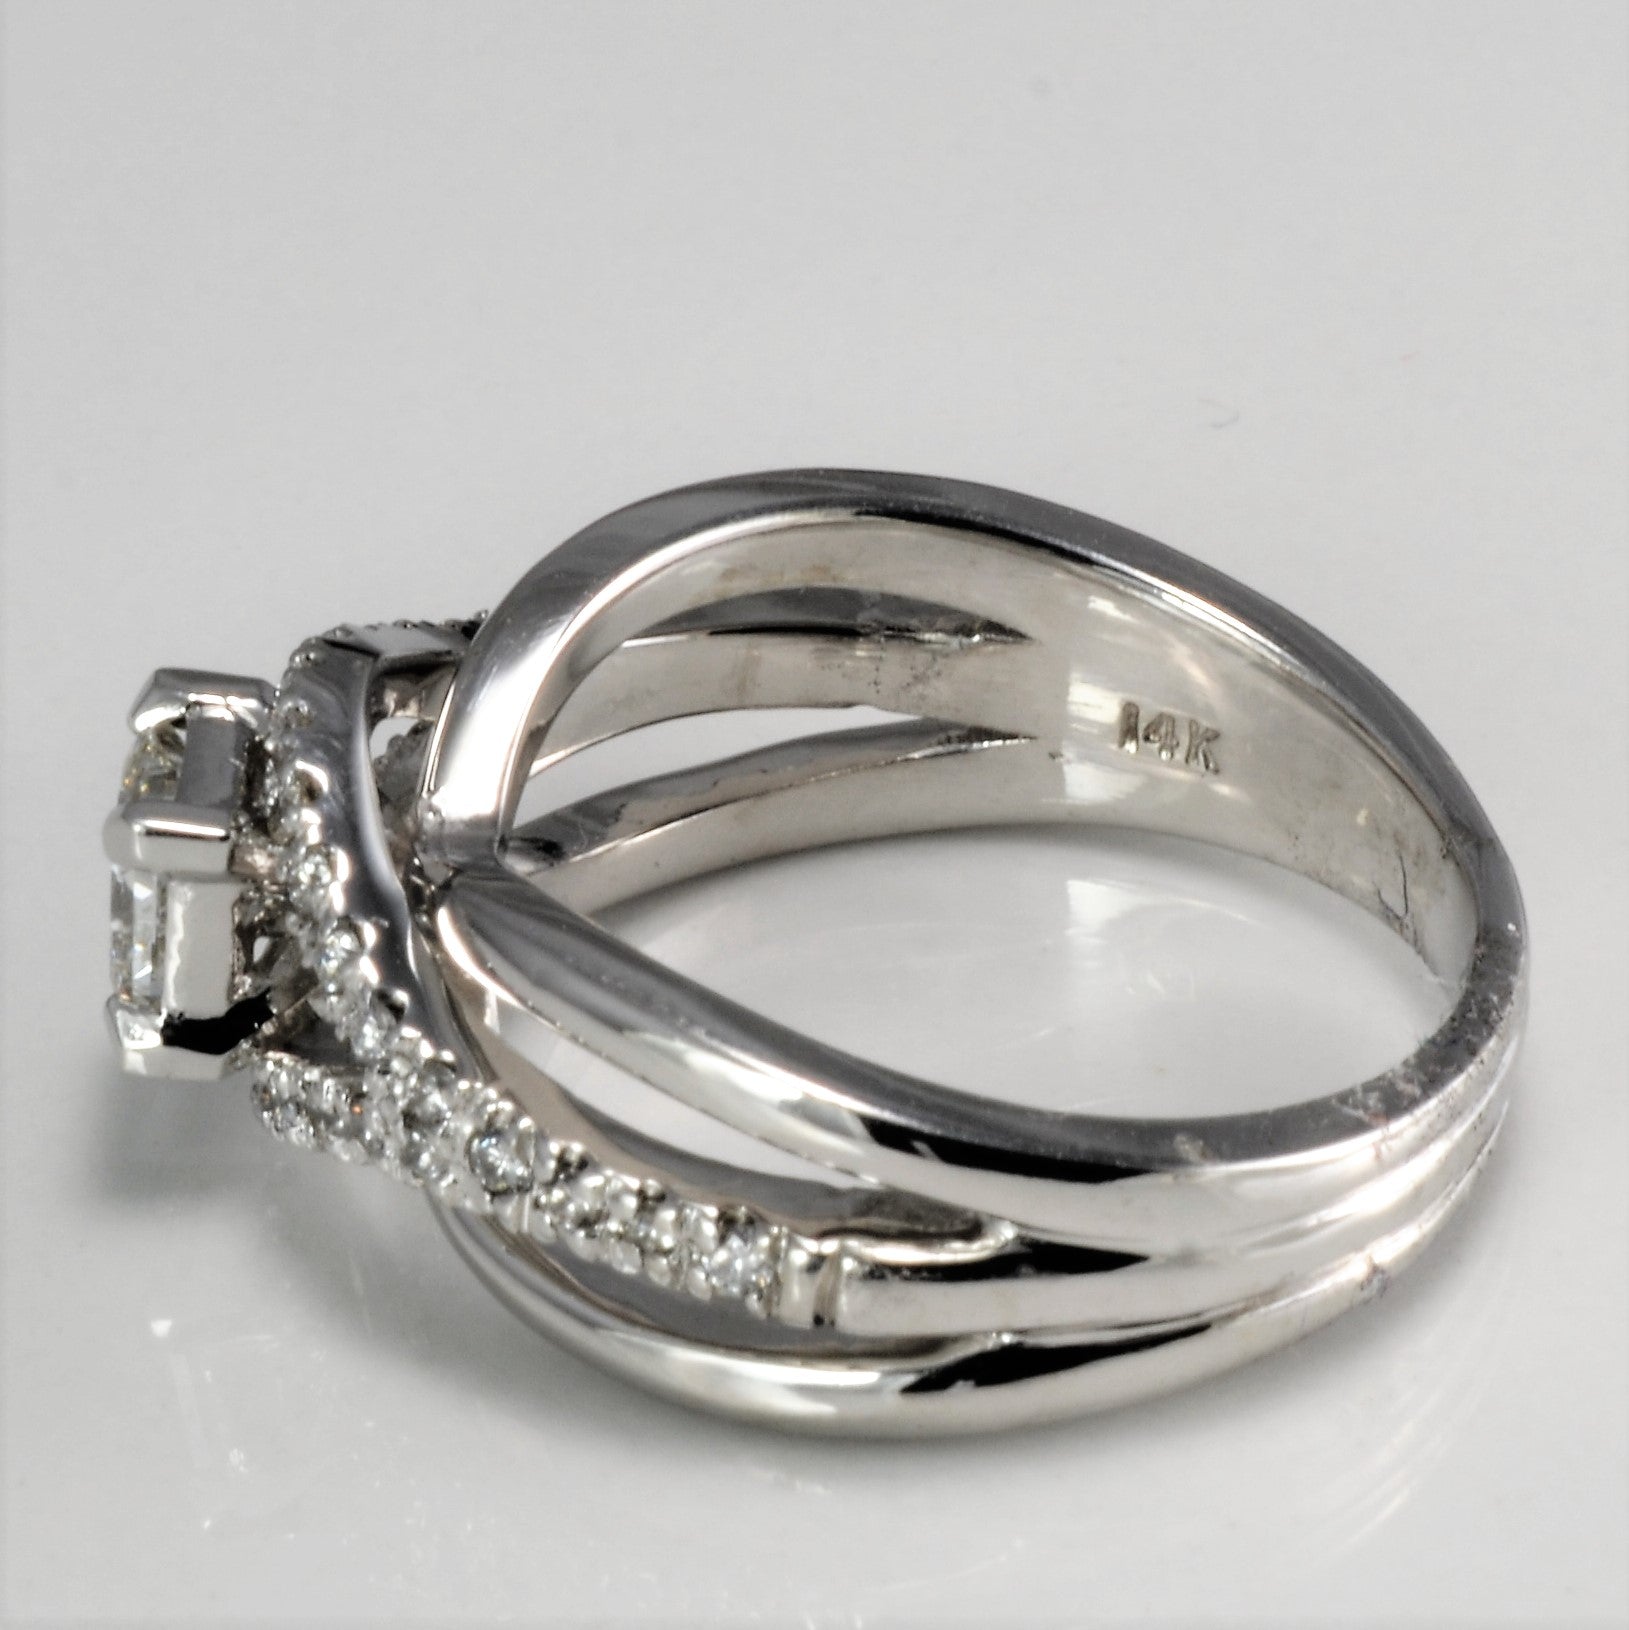 Split Shank GIA Diamond Overlay Engagement Ring | 0.69 ctw, SZ 7.25 | VS1, F |